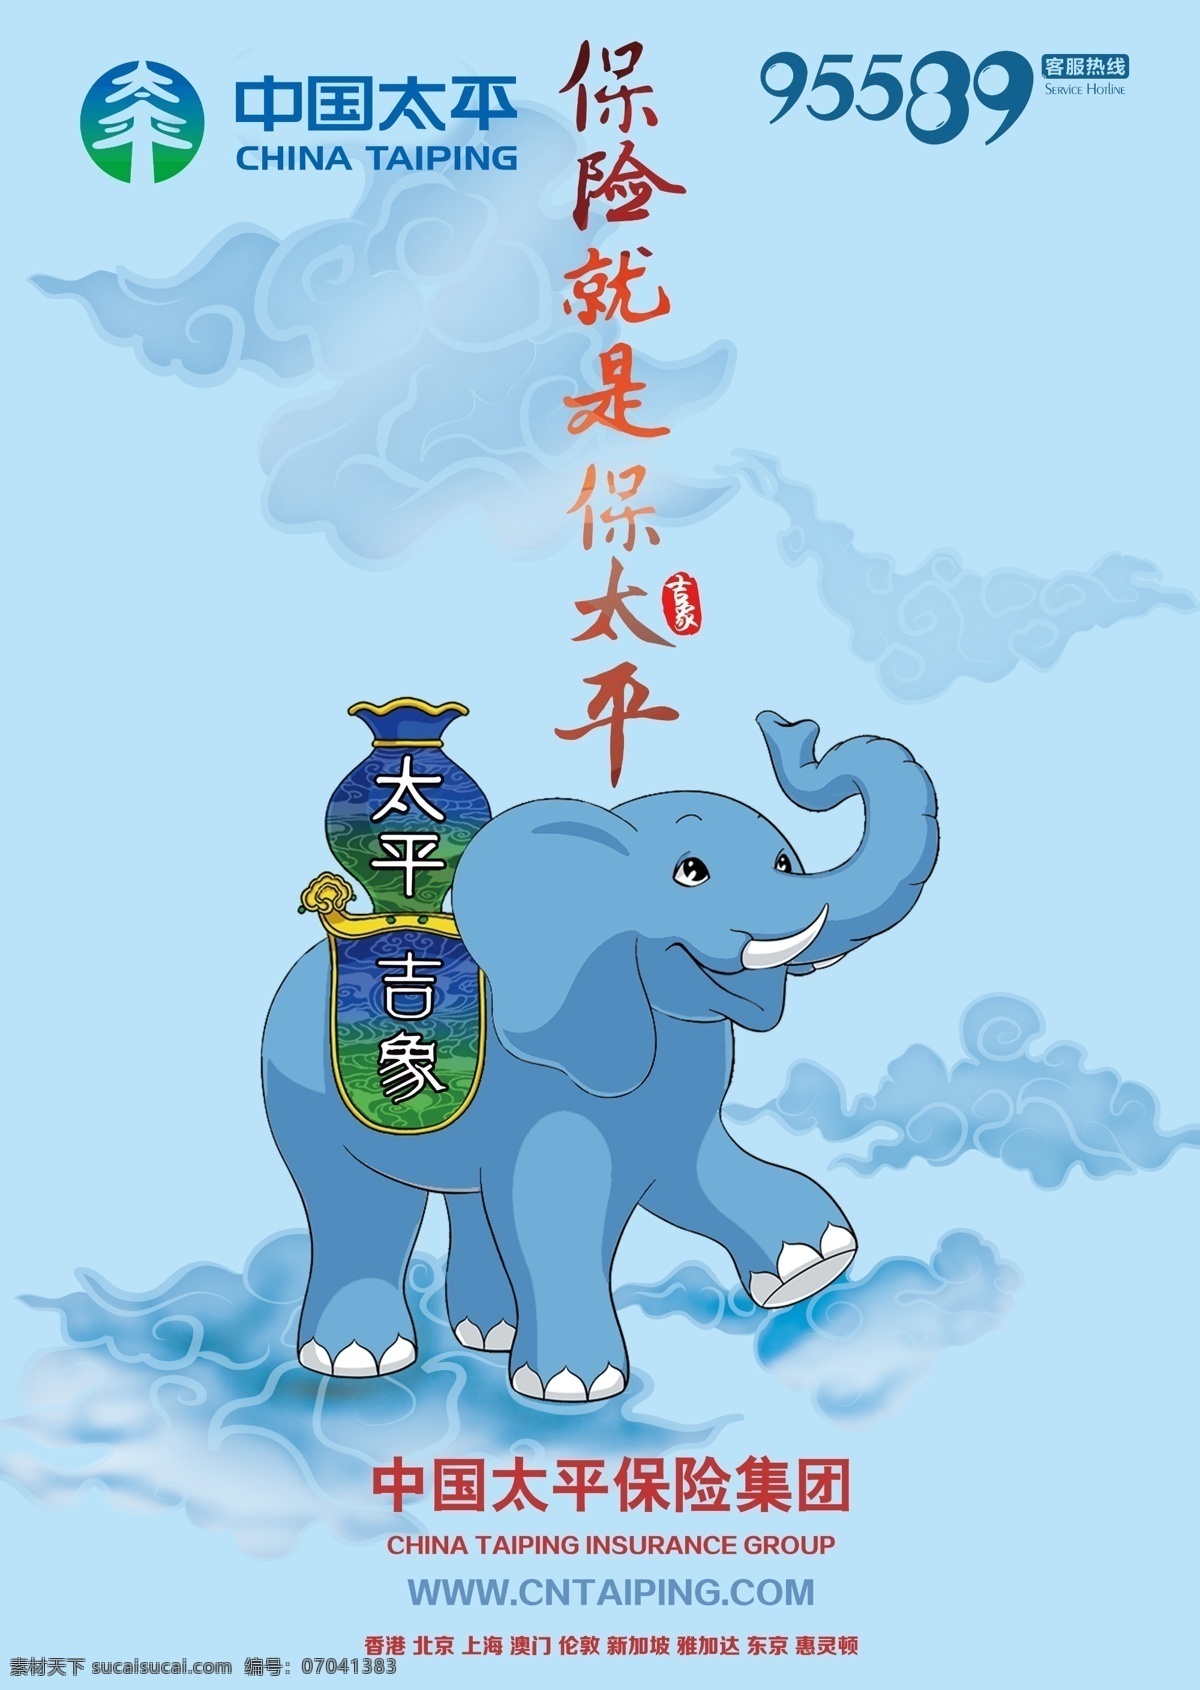 中国太平人寿 大象 保险 蓝 吉象 祥云